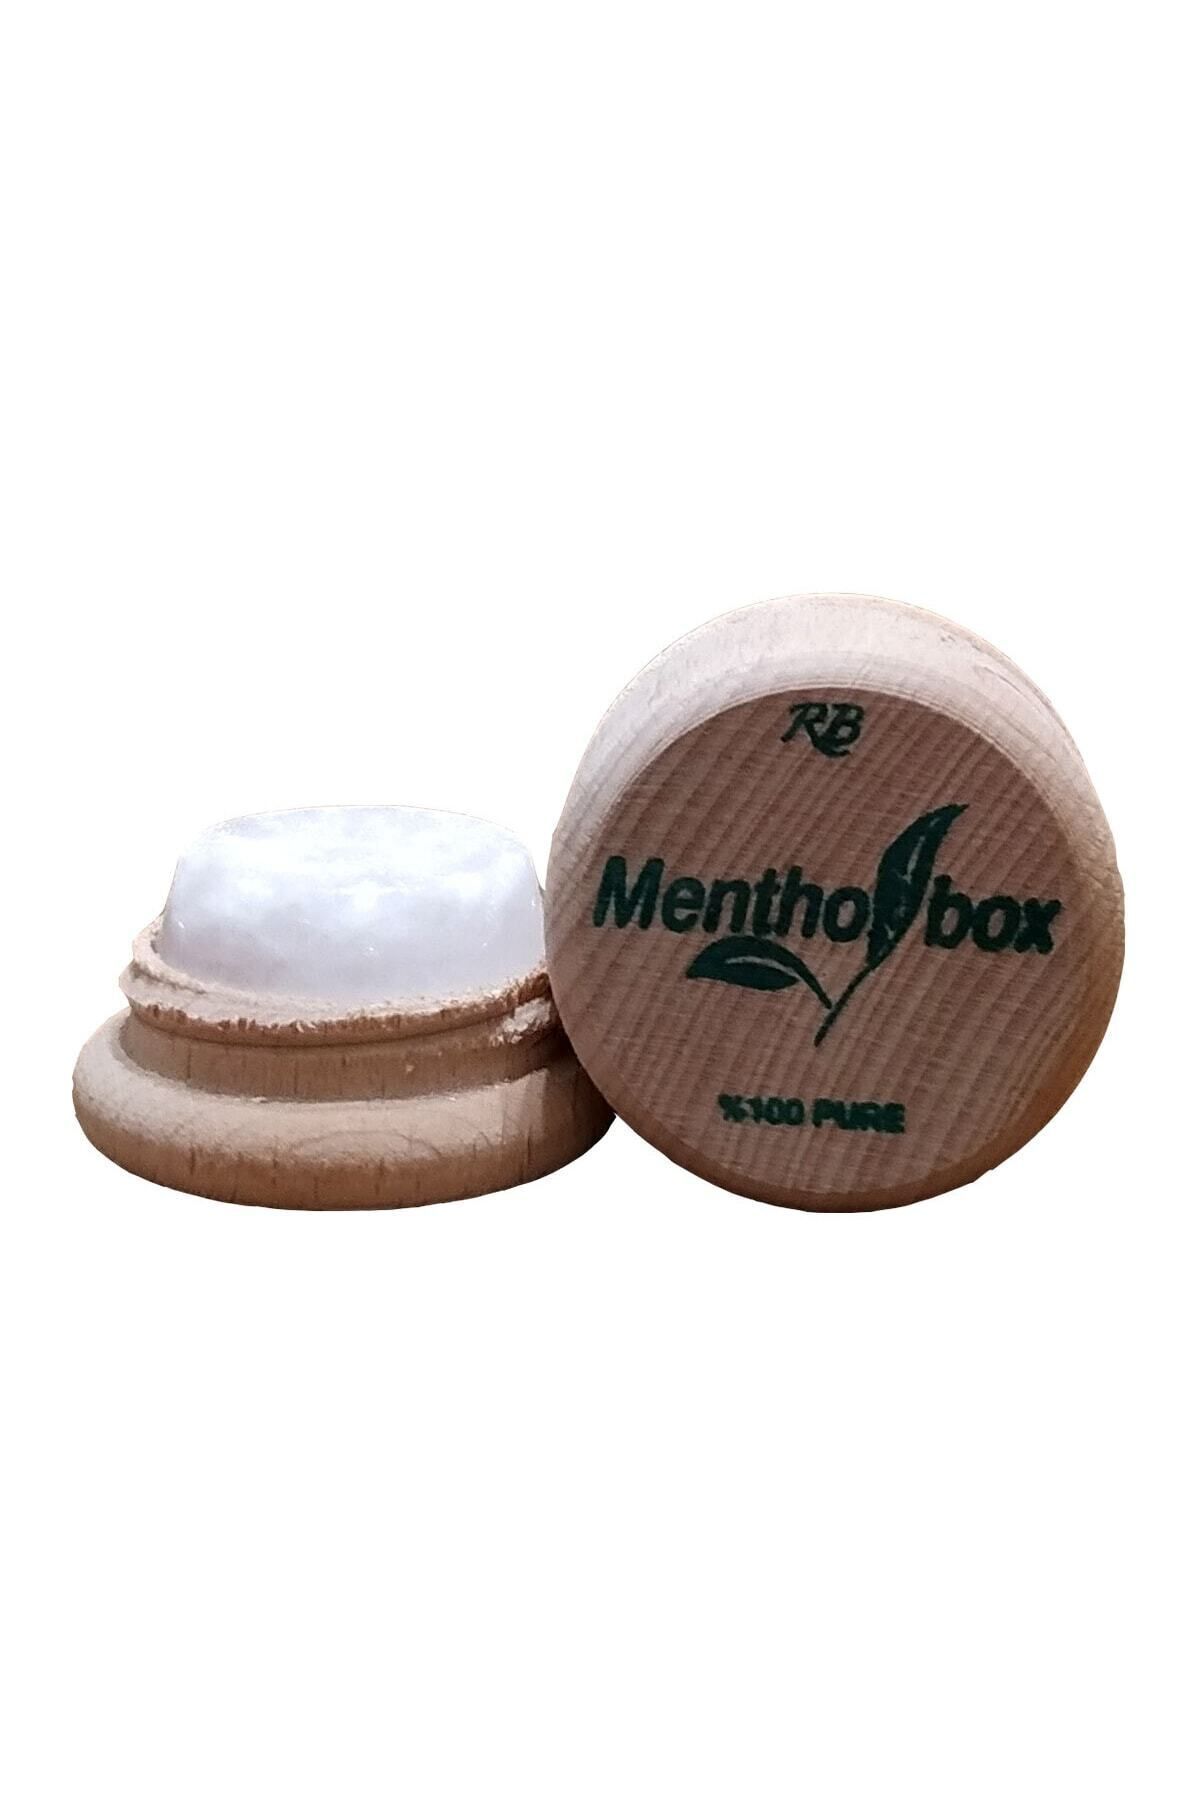 Menthol Box Menthol Taşı Spa Ve Masaj Mentholü 6gr X 18 Adet